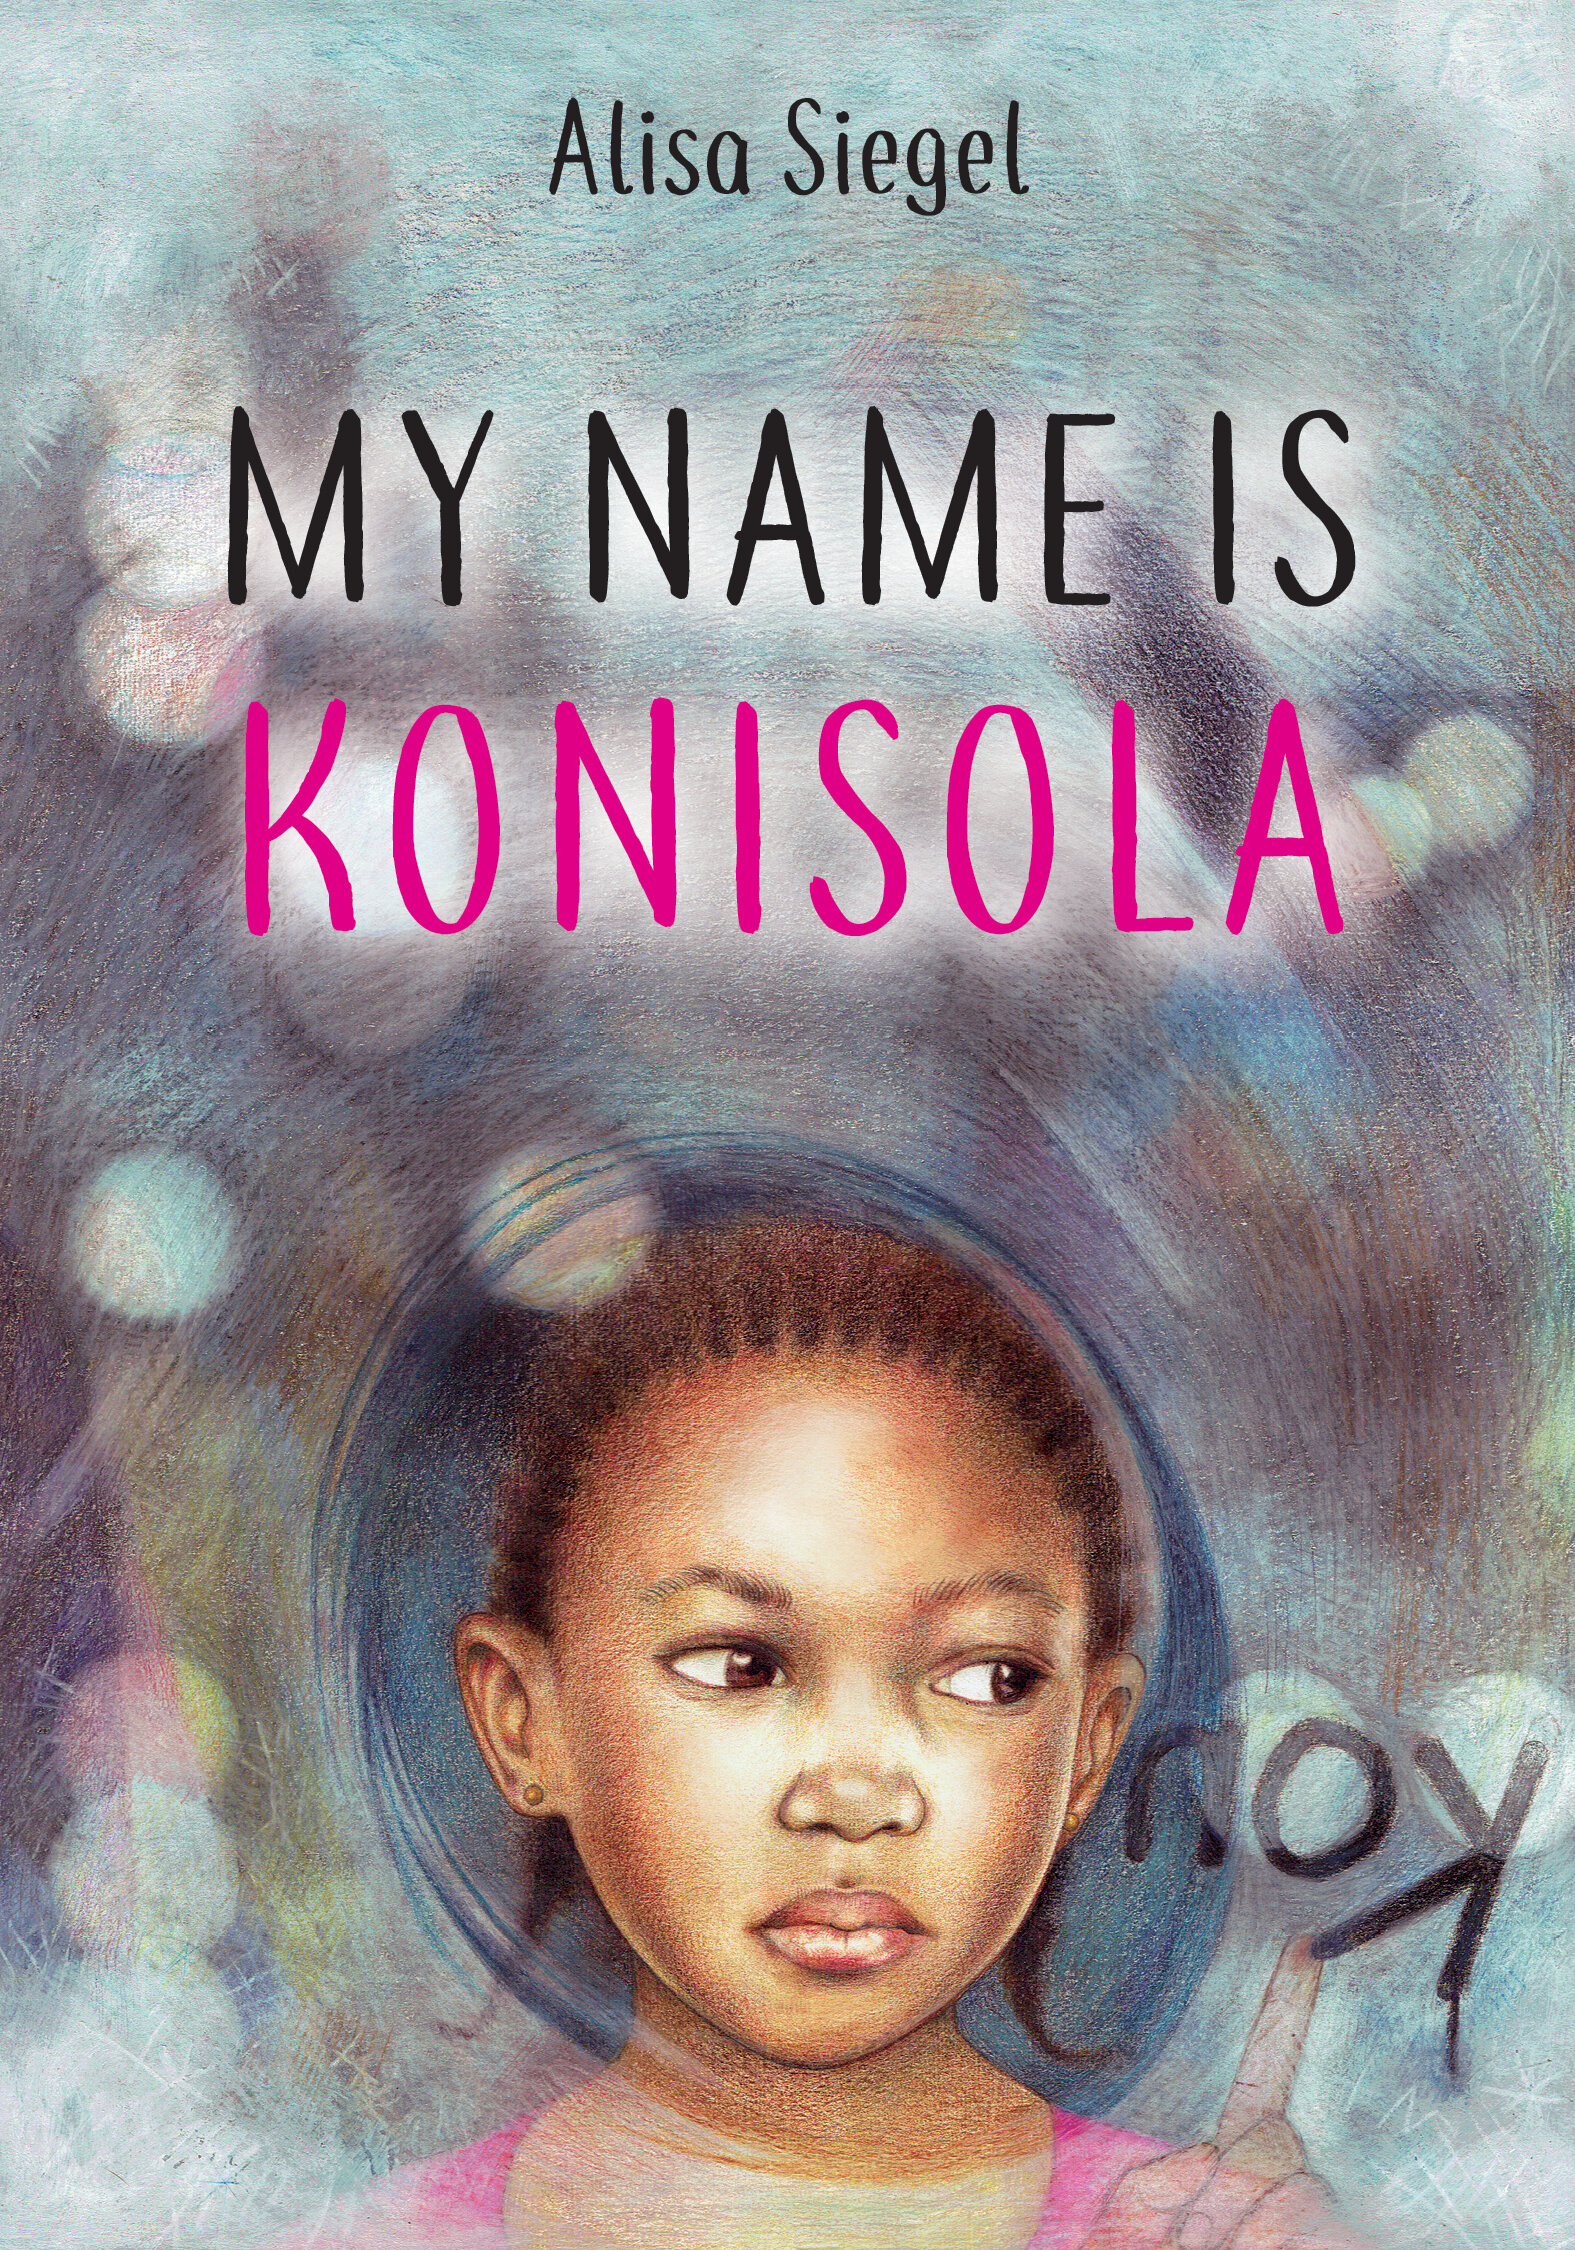 My Name is Konisola